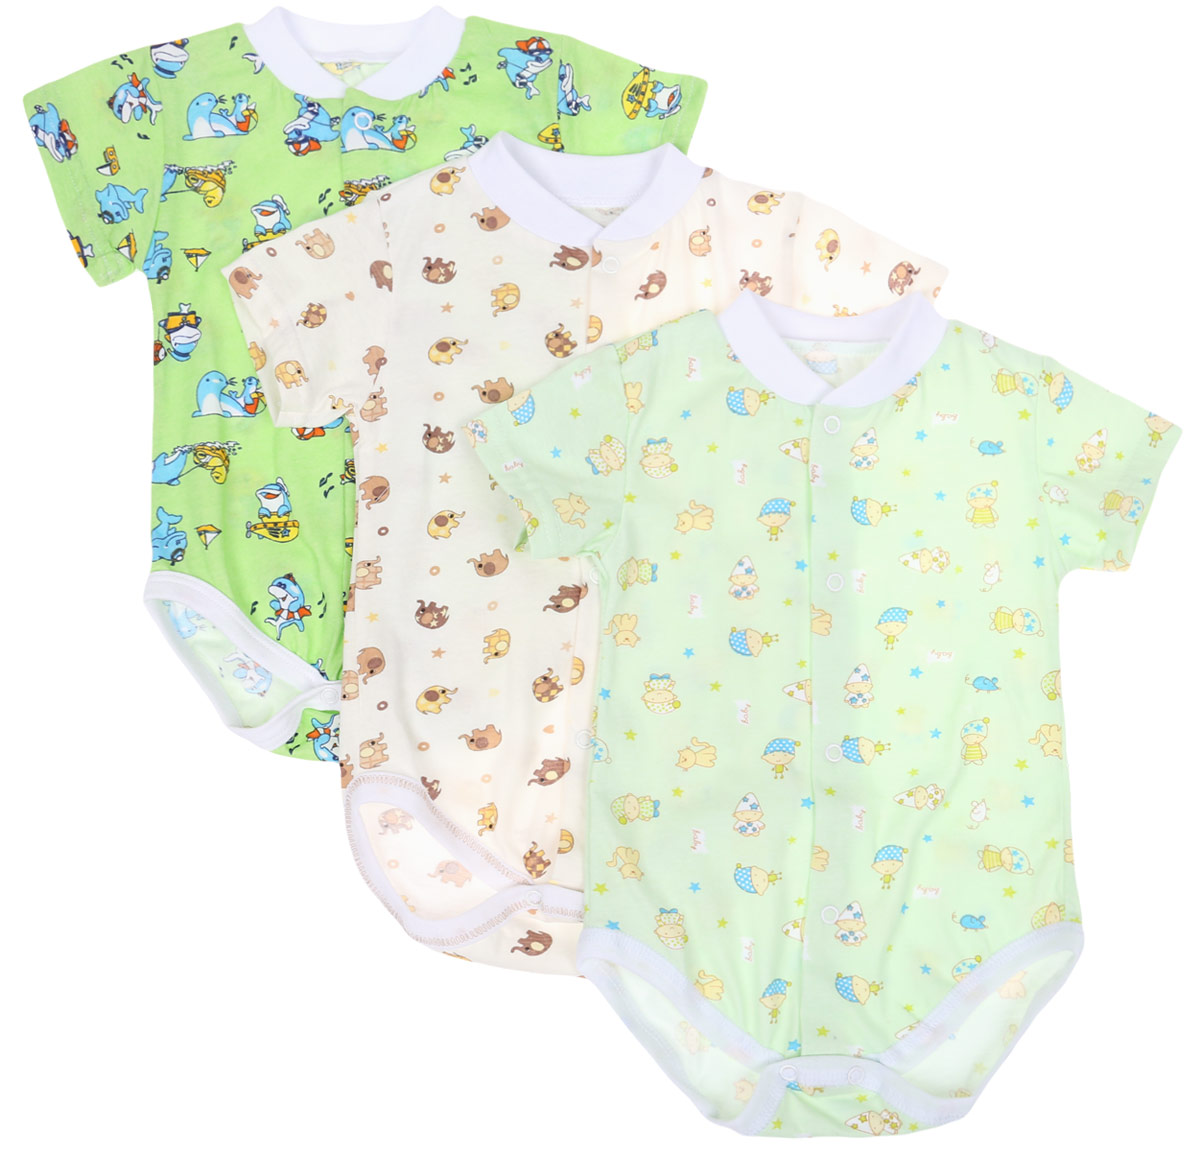 Боди-футболка детское Фреш Стайл, цвет: зеленый, молочный, 3 шт. 10-325м. Размер 74, 9 месяцев